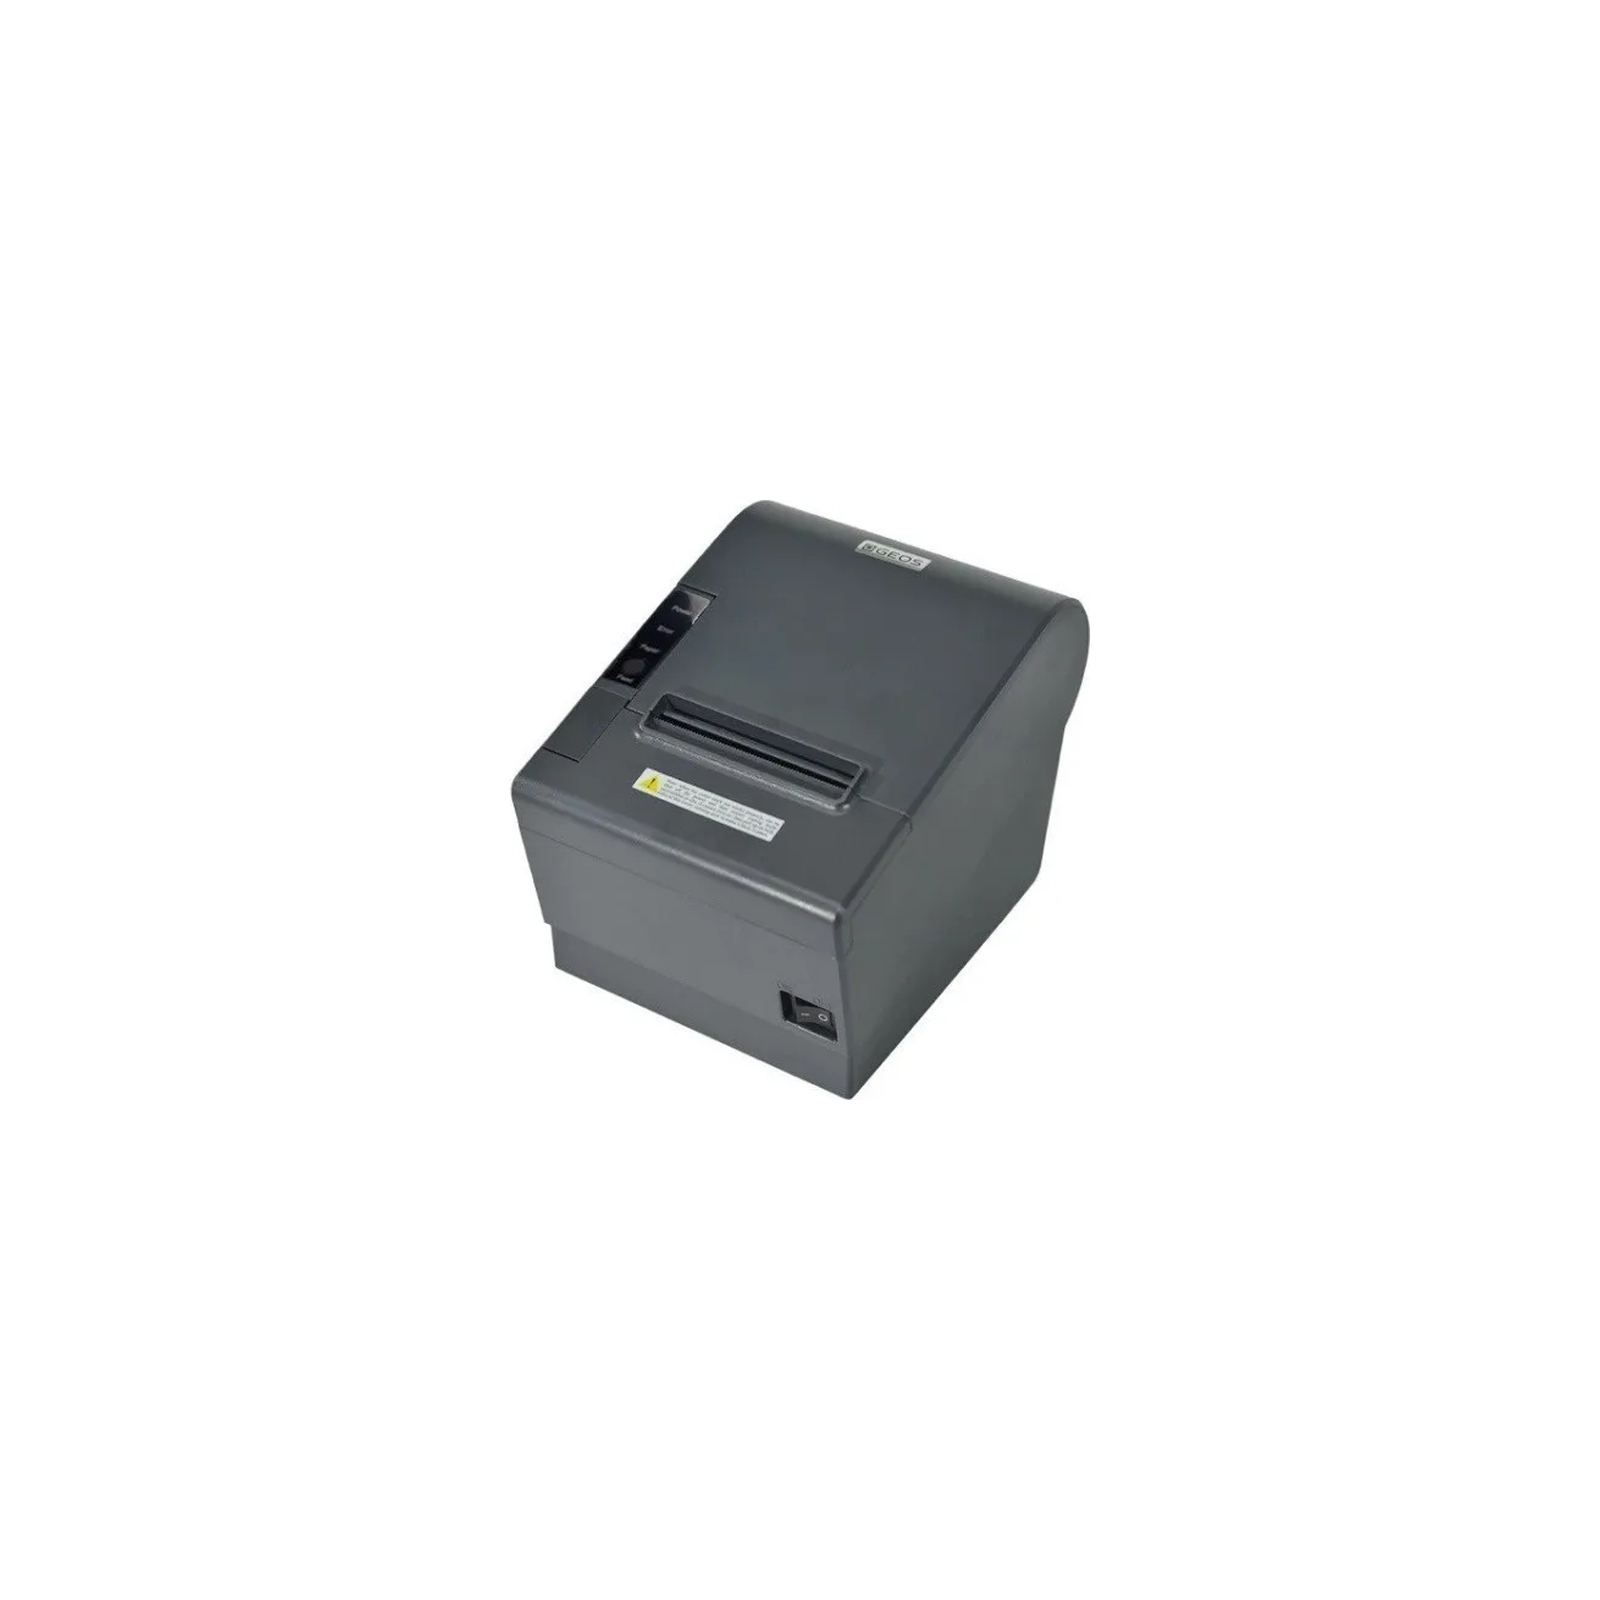 Принтер чеків Geos RP3101 з розділювачем 58-80мм, USB, Ethernet (RP3101 divider 58/80)